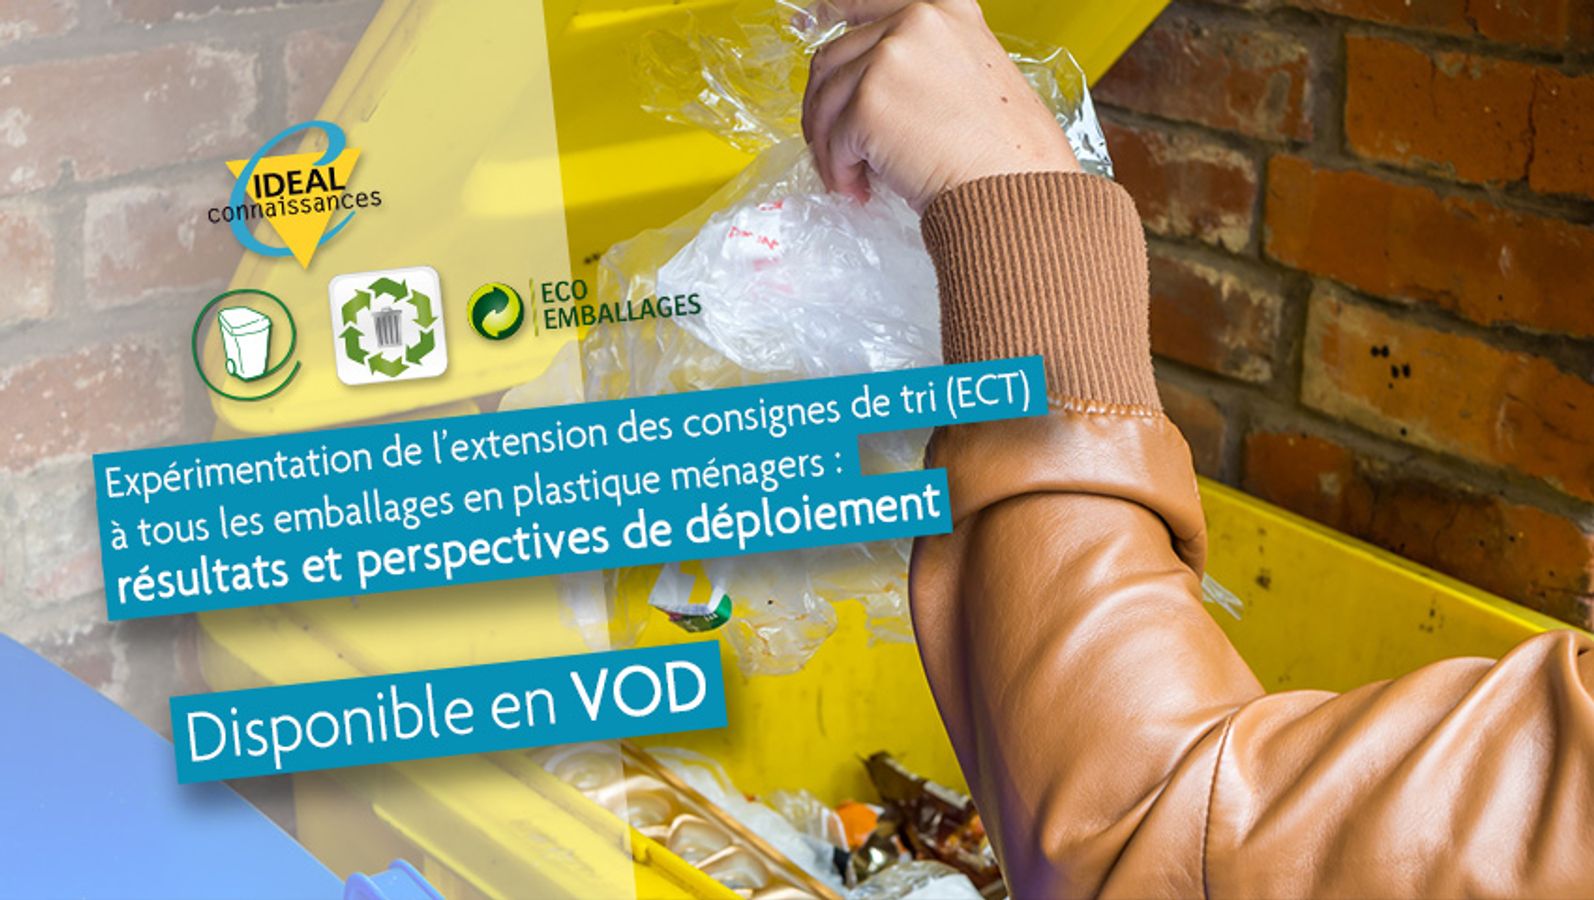 Expérimentation de l’extension des consignes de tri à tous les emballages en plastique ménagers : résultats et perspectives de déploiement